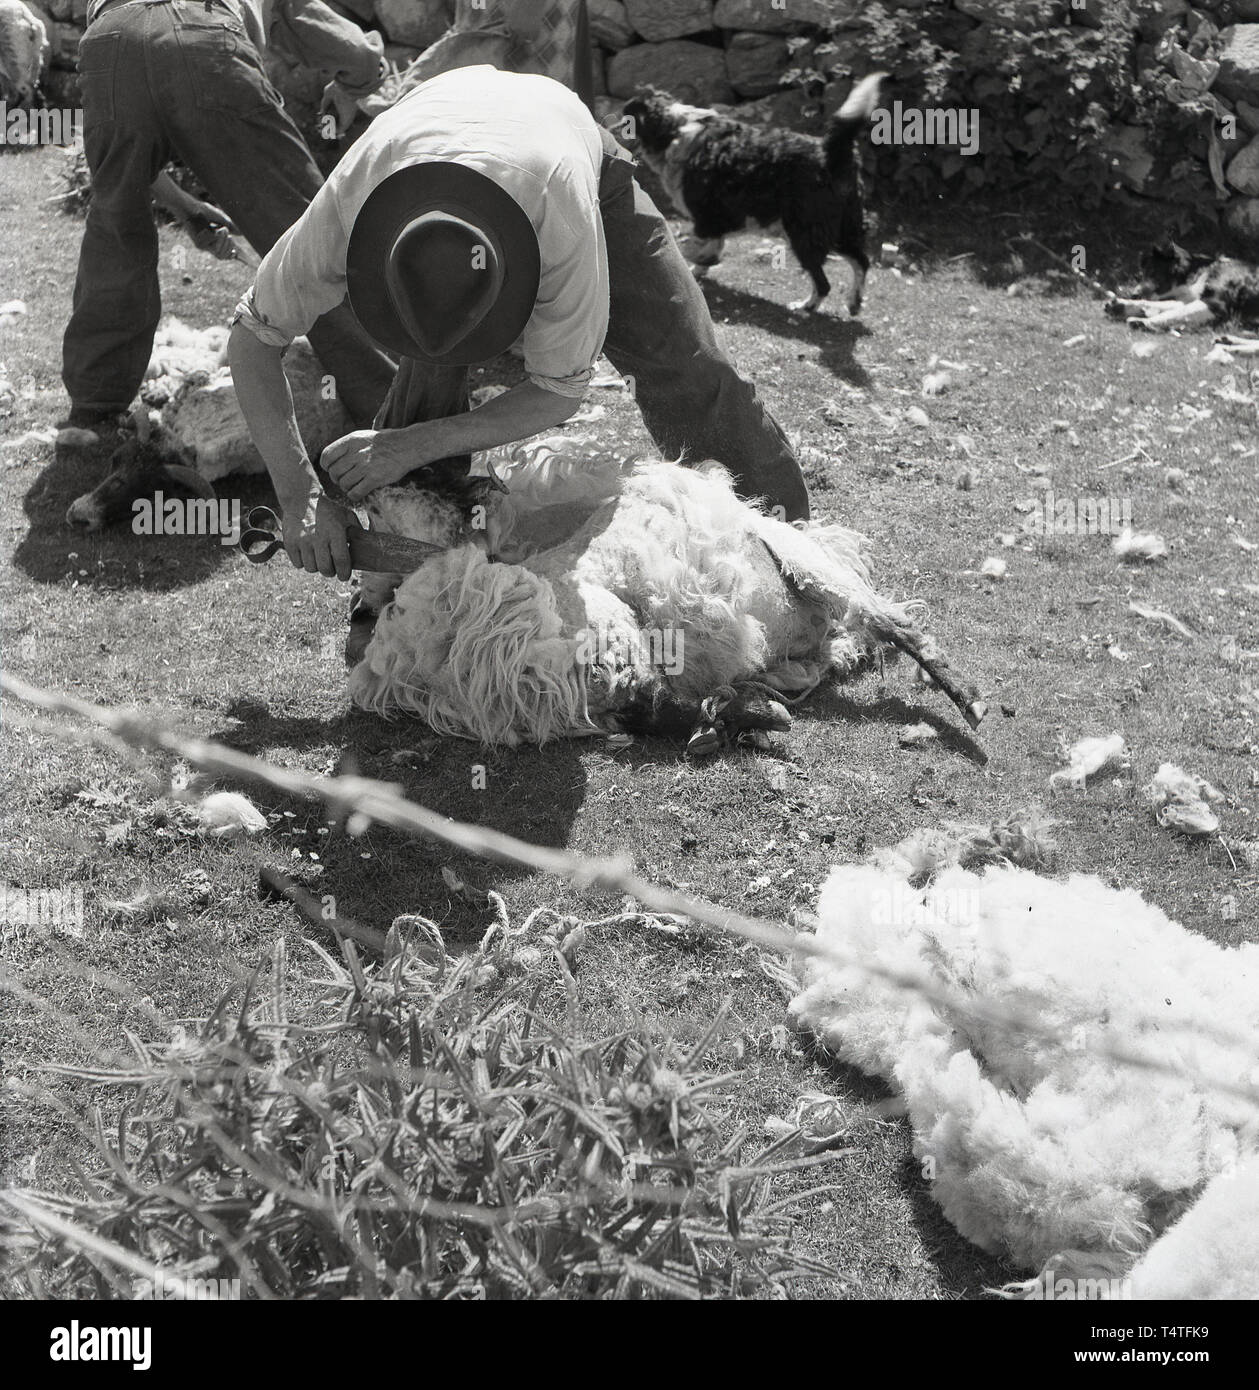 Anni sessanta, storico tosatura delle pecore in un recinto da un muro di pietra, per un agricoltore o taglierina con lama cesoia, un grande paio di forbici per tagliare la lana off una pecora, Inghilterra, Regno Unito. Foto Stock